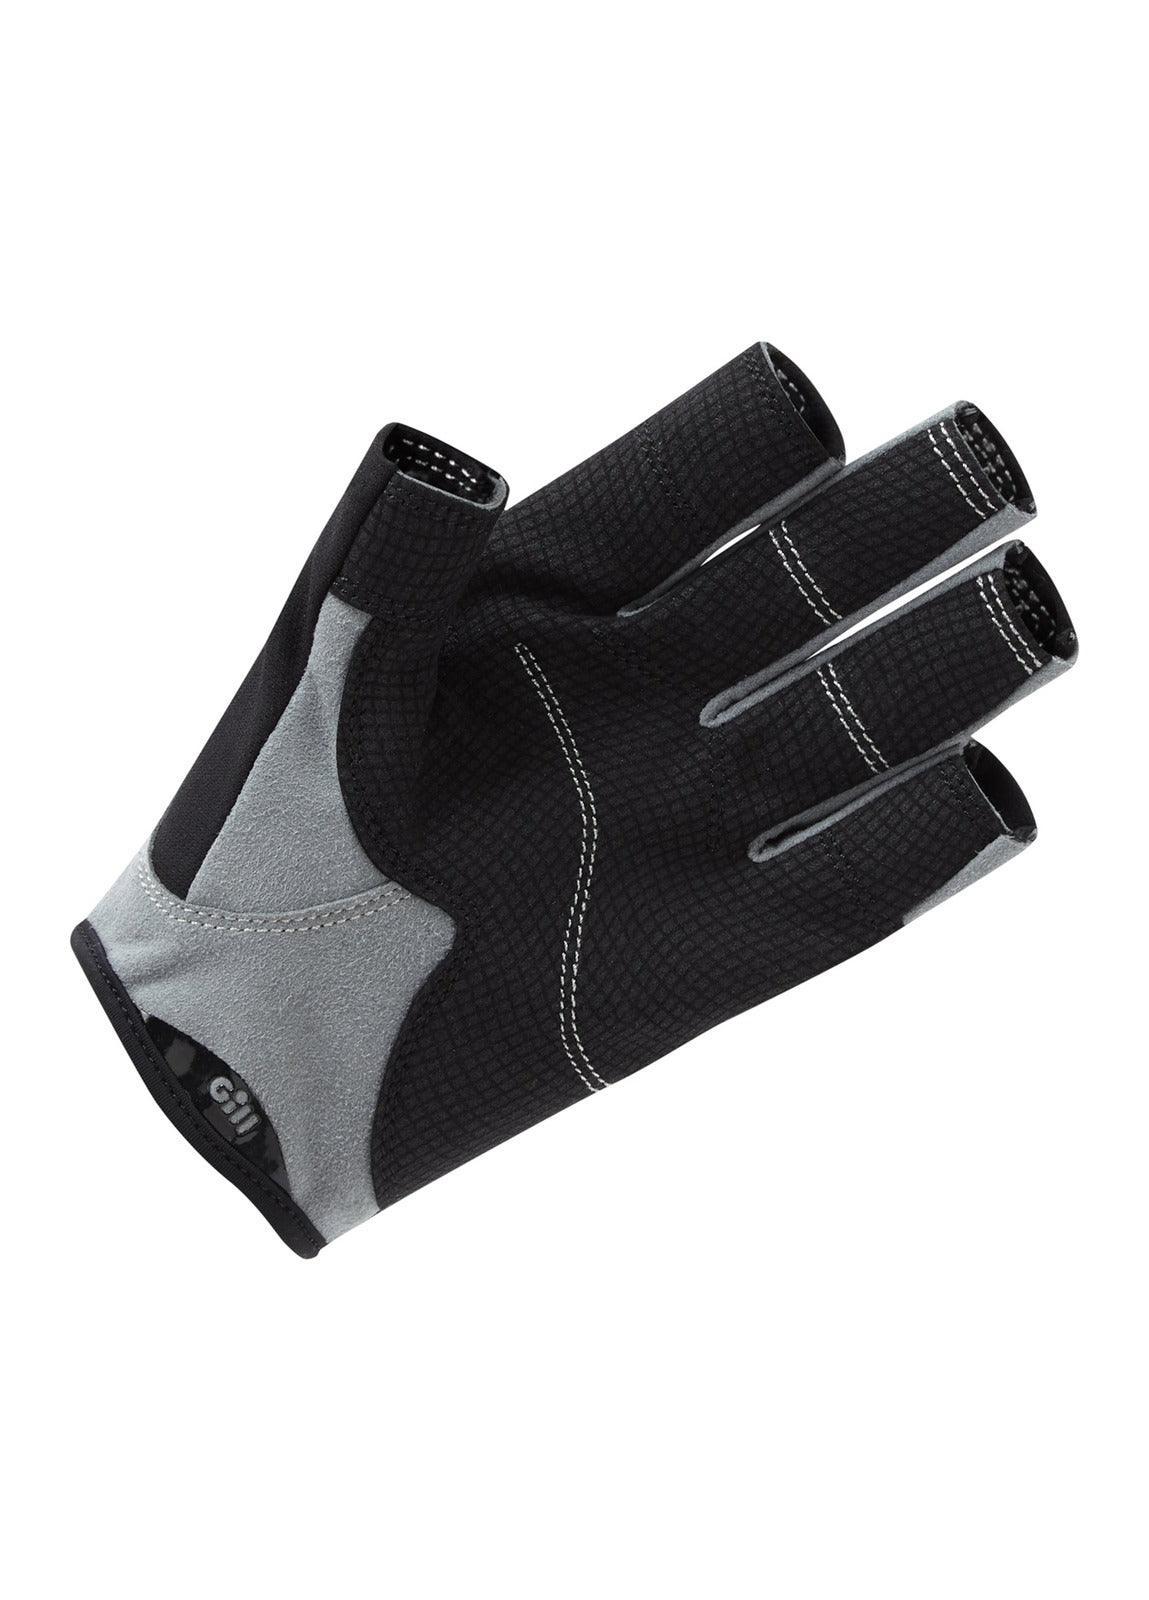 Gill Junior Deckhand Gloves Short Finger - Black